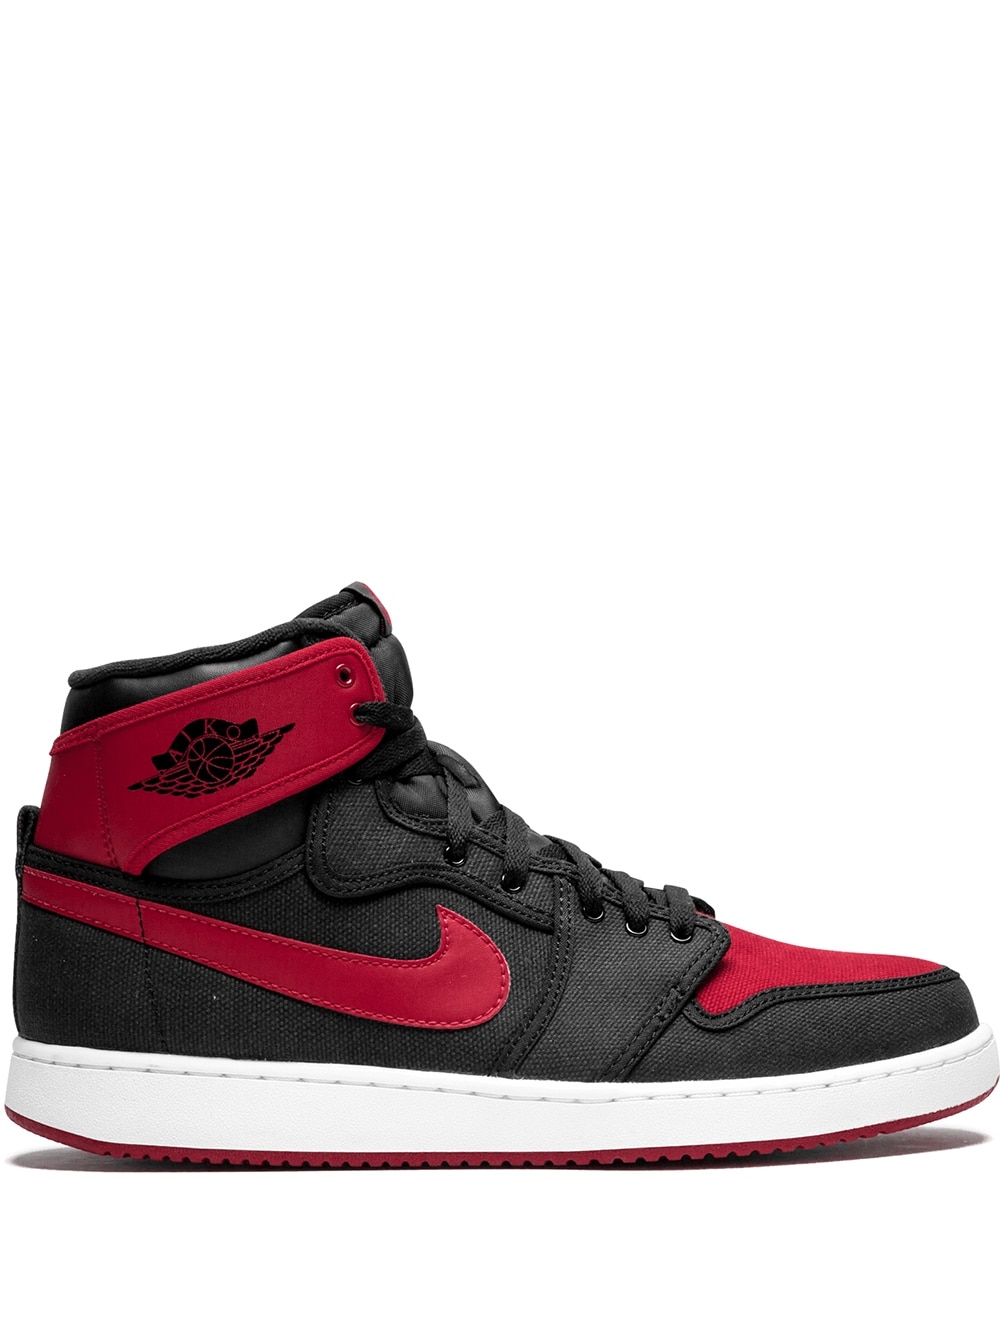 Jordan Jordan 1 KO High sneakers - Black